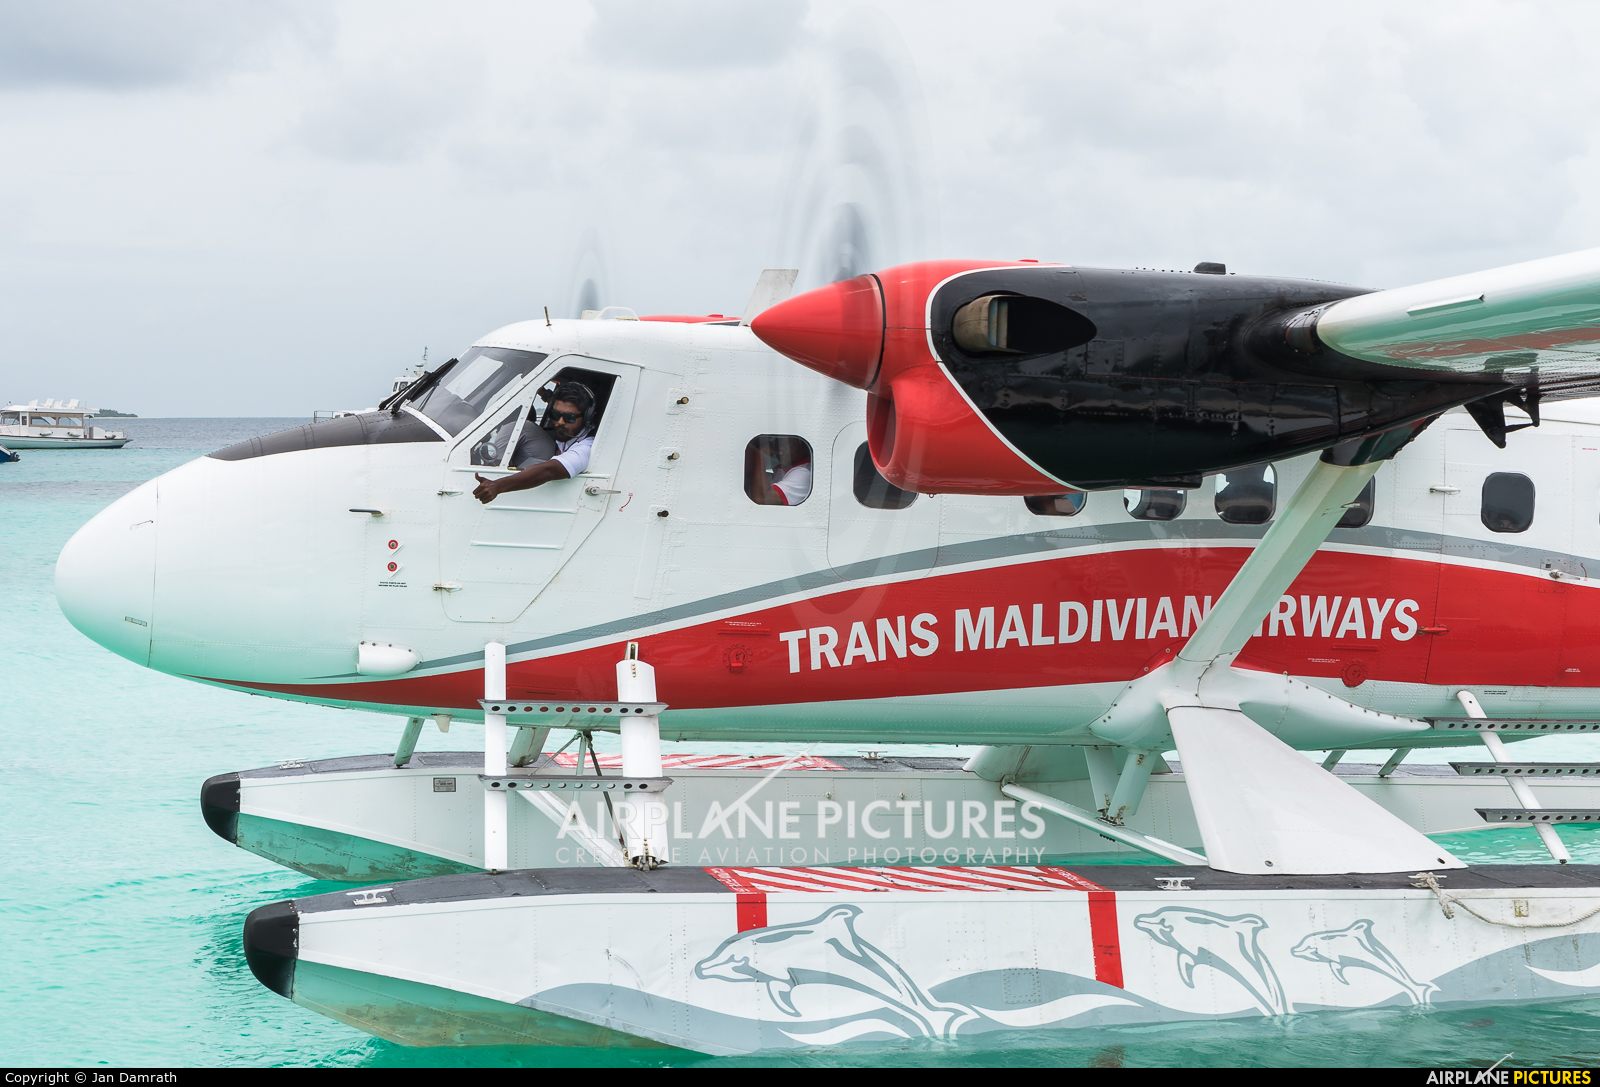 Trans Maldivian Airways - TMA 8Q-MAH aircraft at Off Airport - Maldives